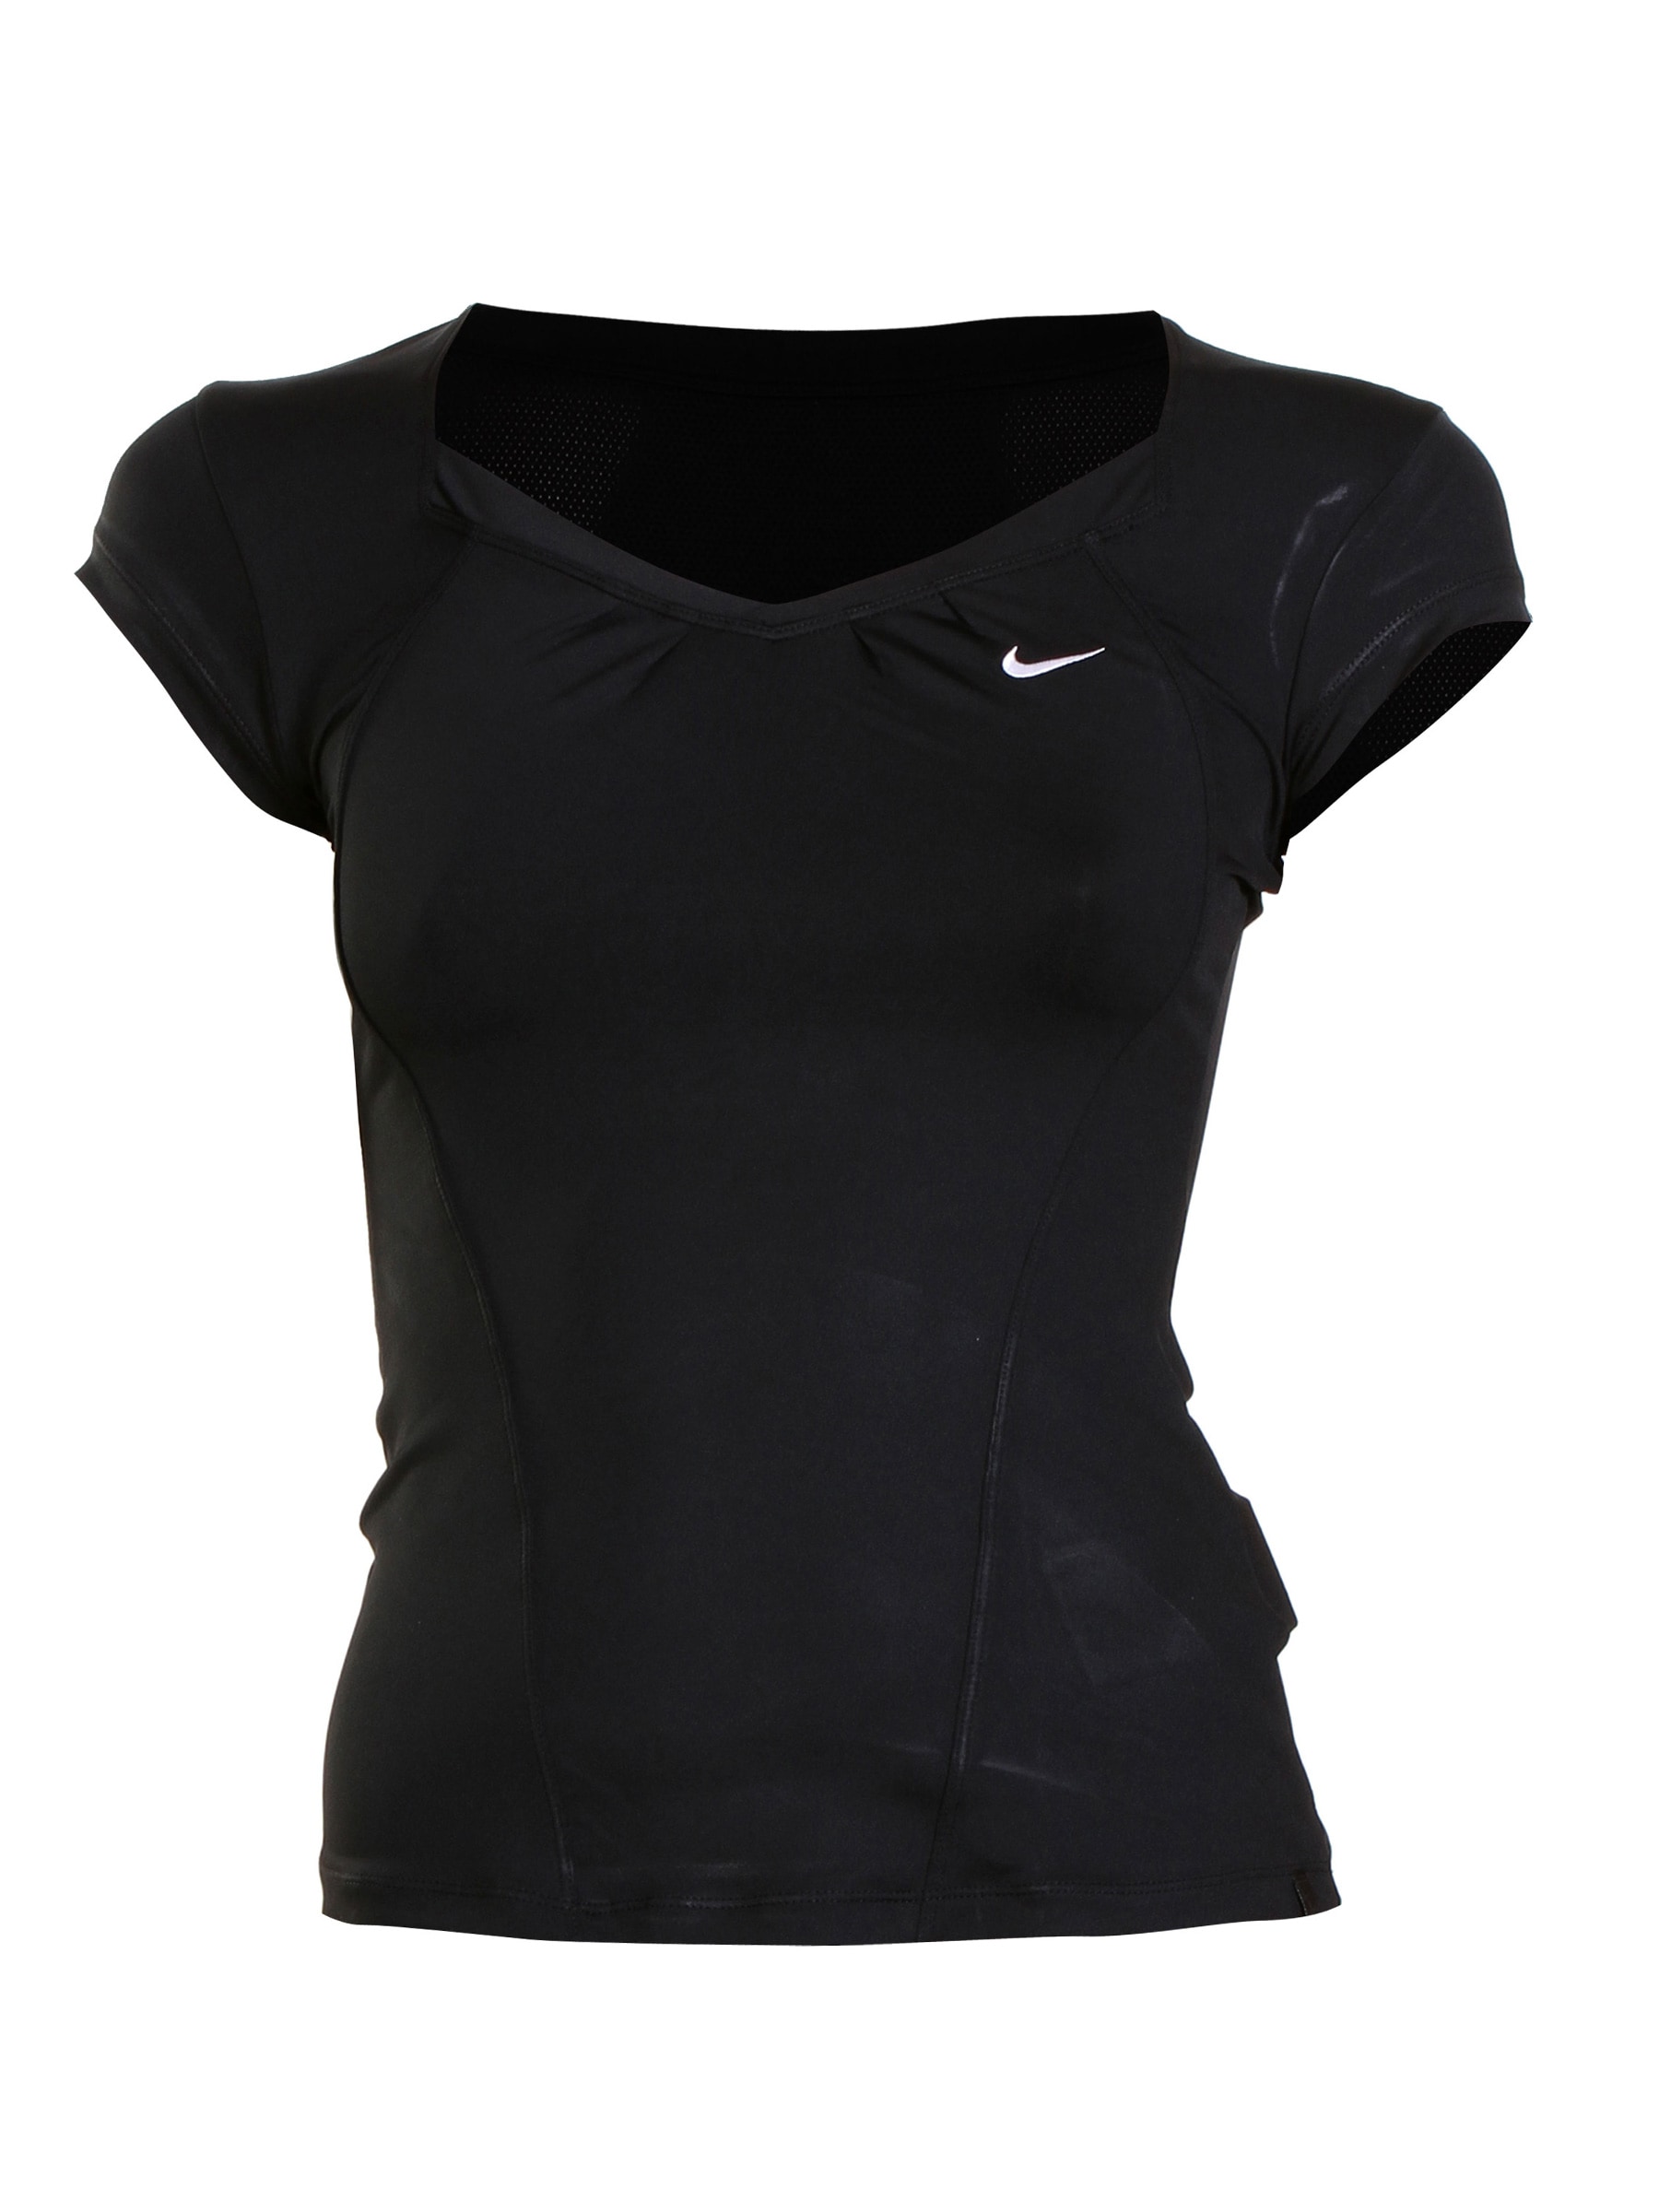 Nike Women Accuracy Black T-shirt